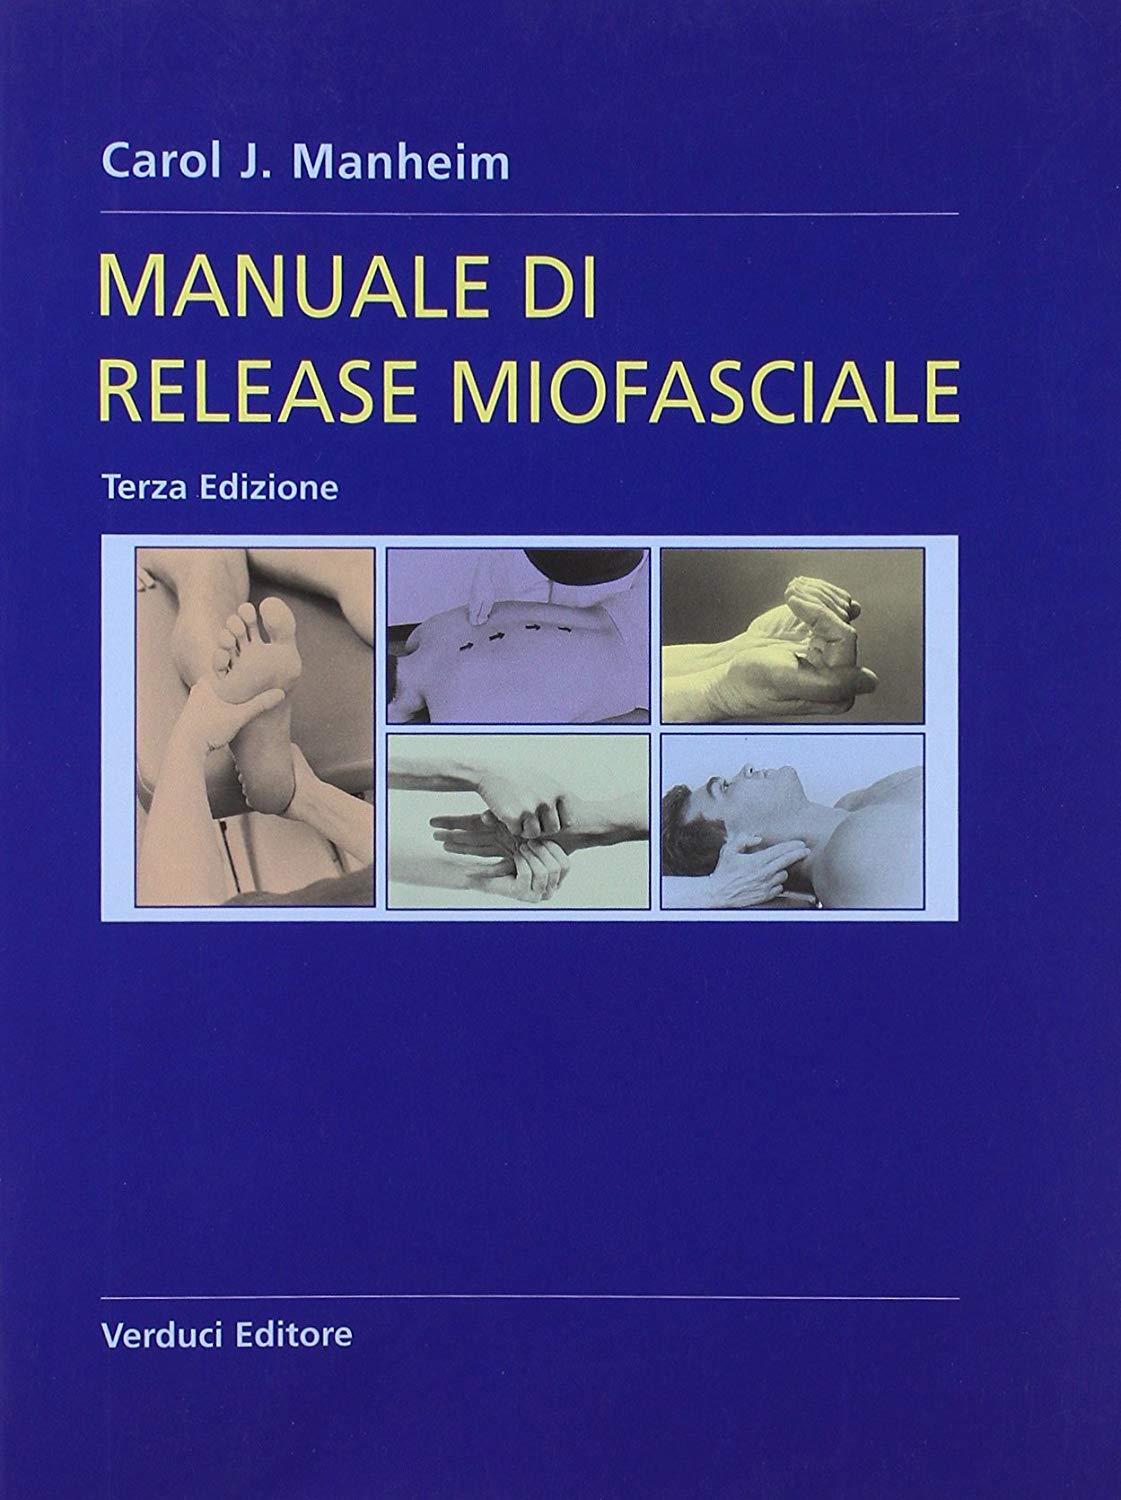 Libri Manheim C. J. - Manuale Di Release Miofasciale NUOVO SIGILLATO SUBITO DISPONIBILE